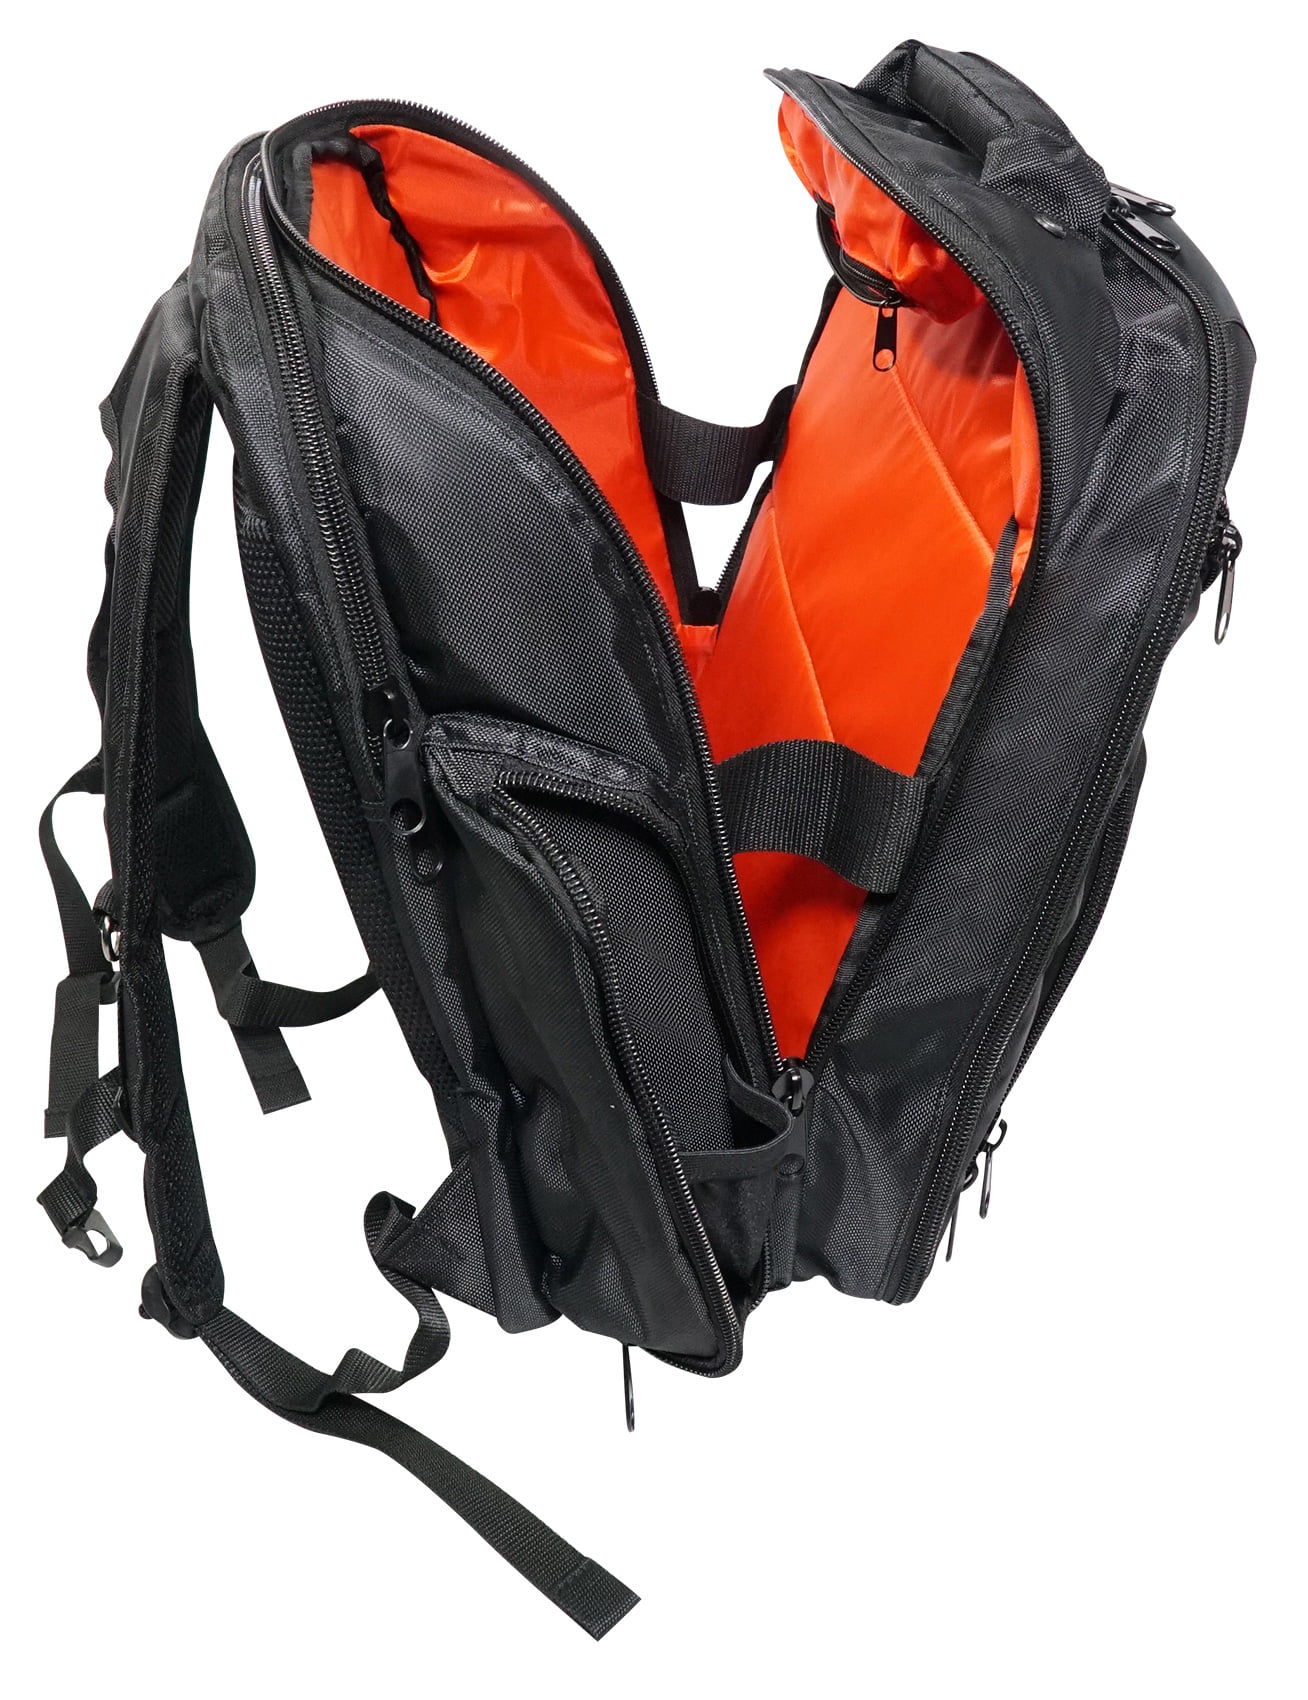 Rockville Travel Case Backpack Bag For Behringer X1204USB Mixer 